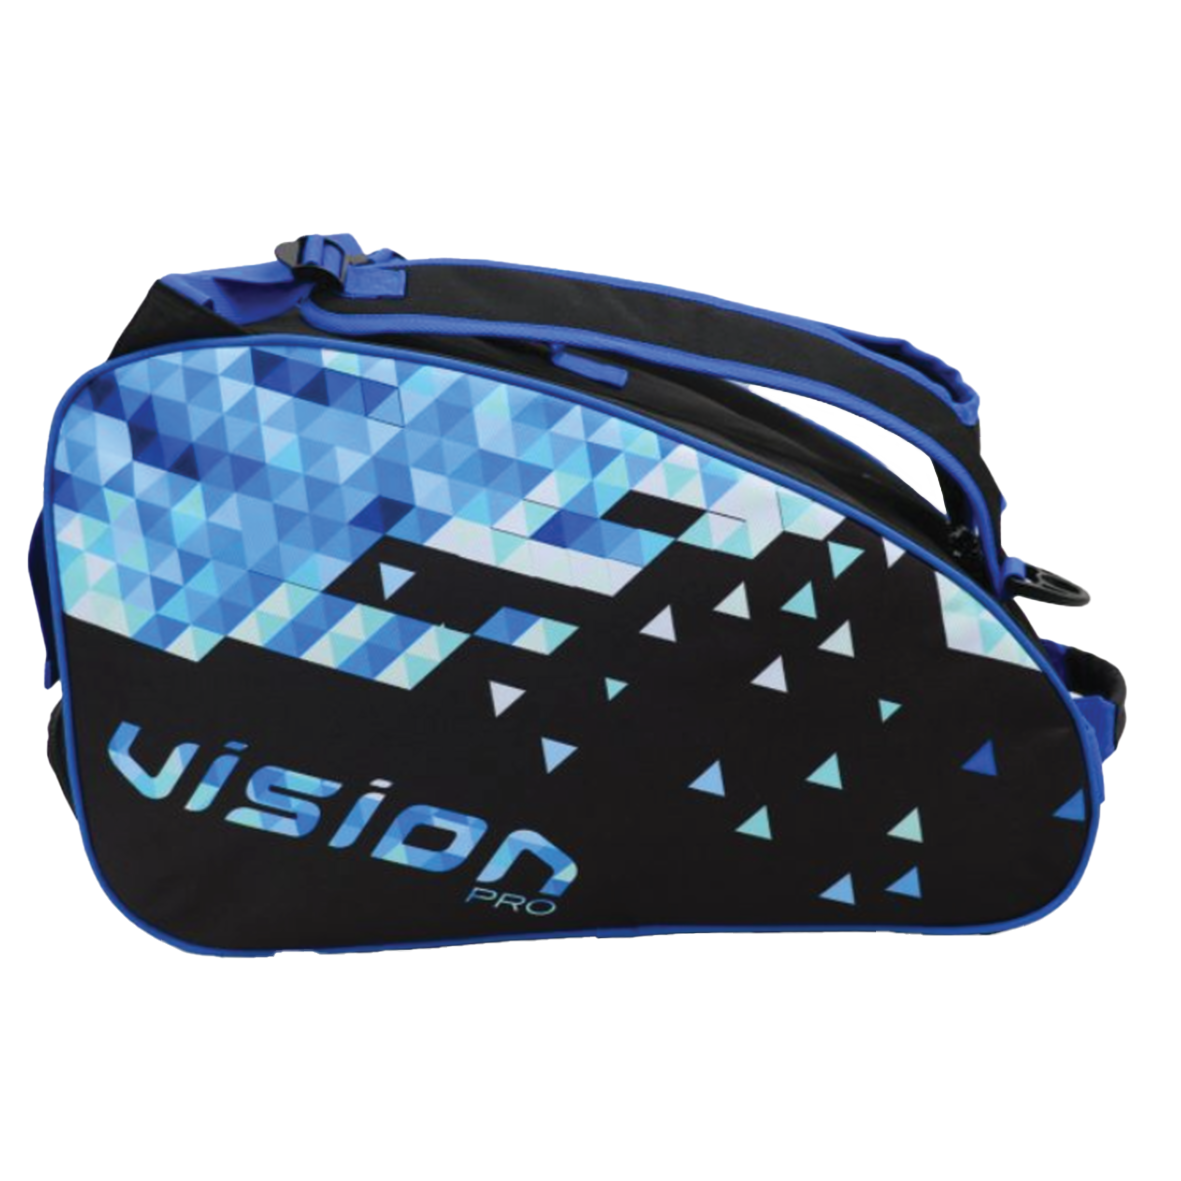 Vision Bag Nixco